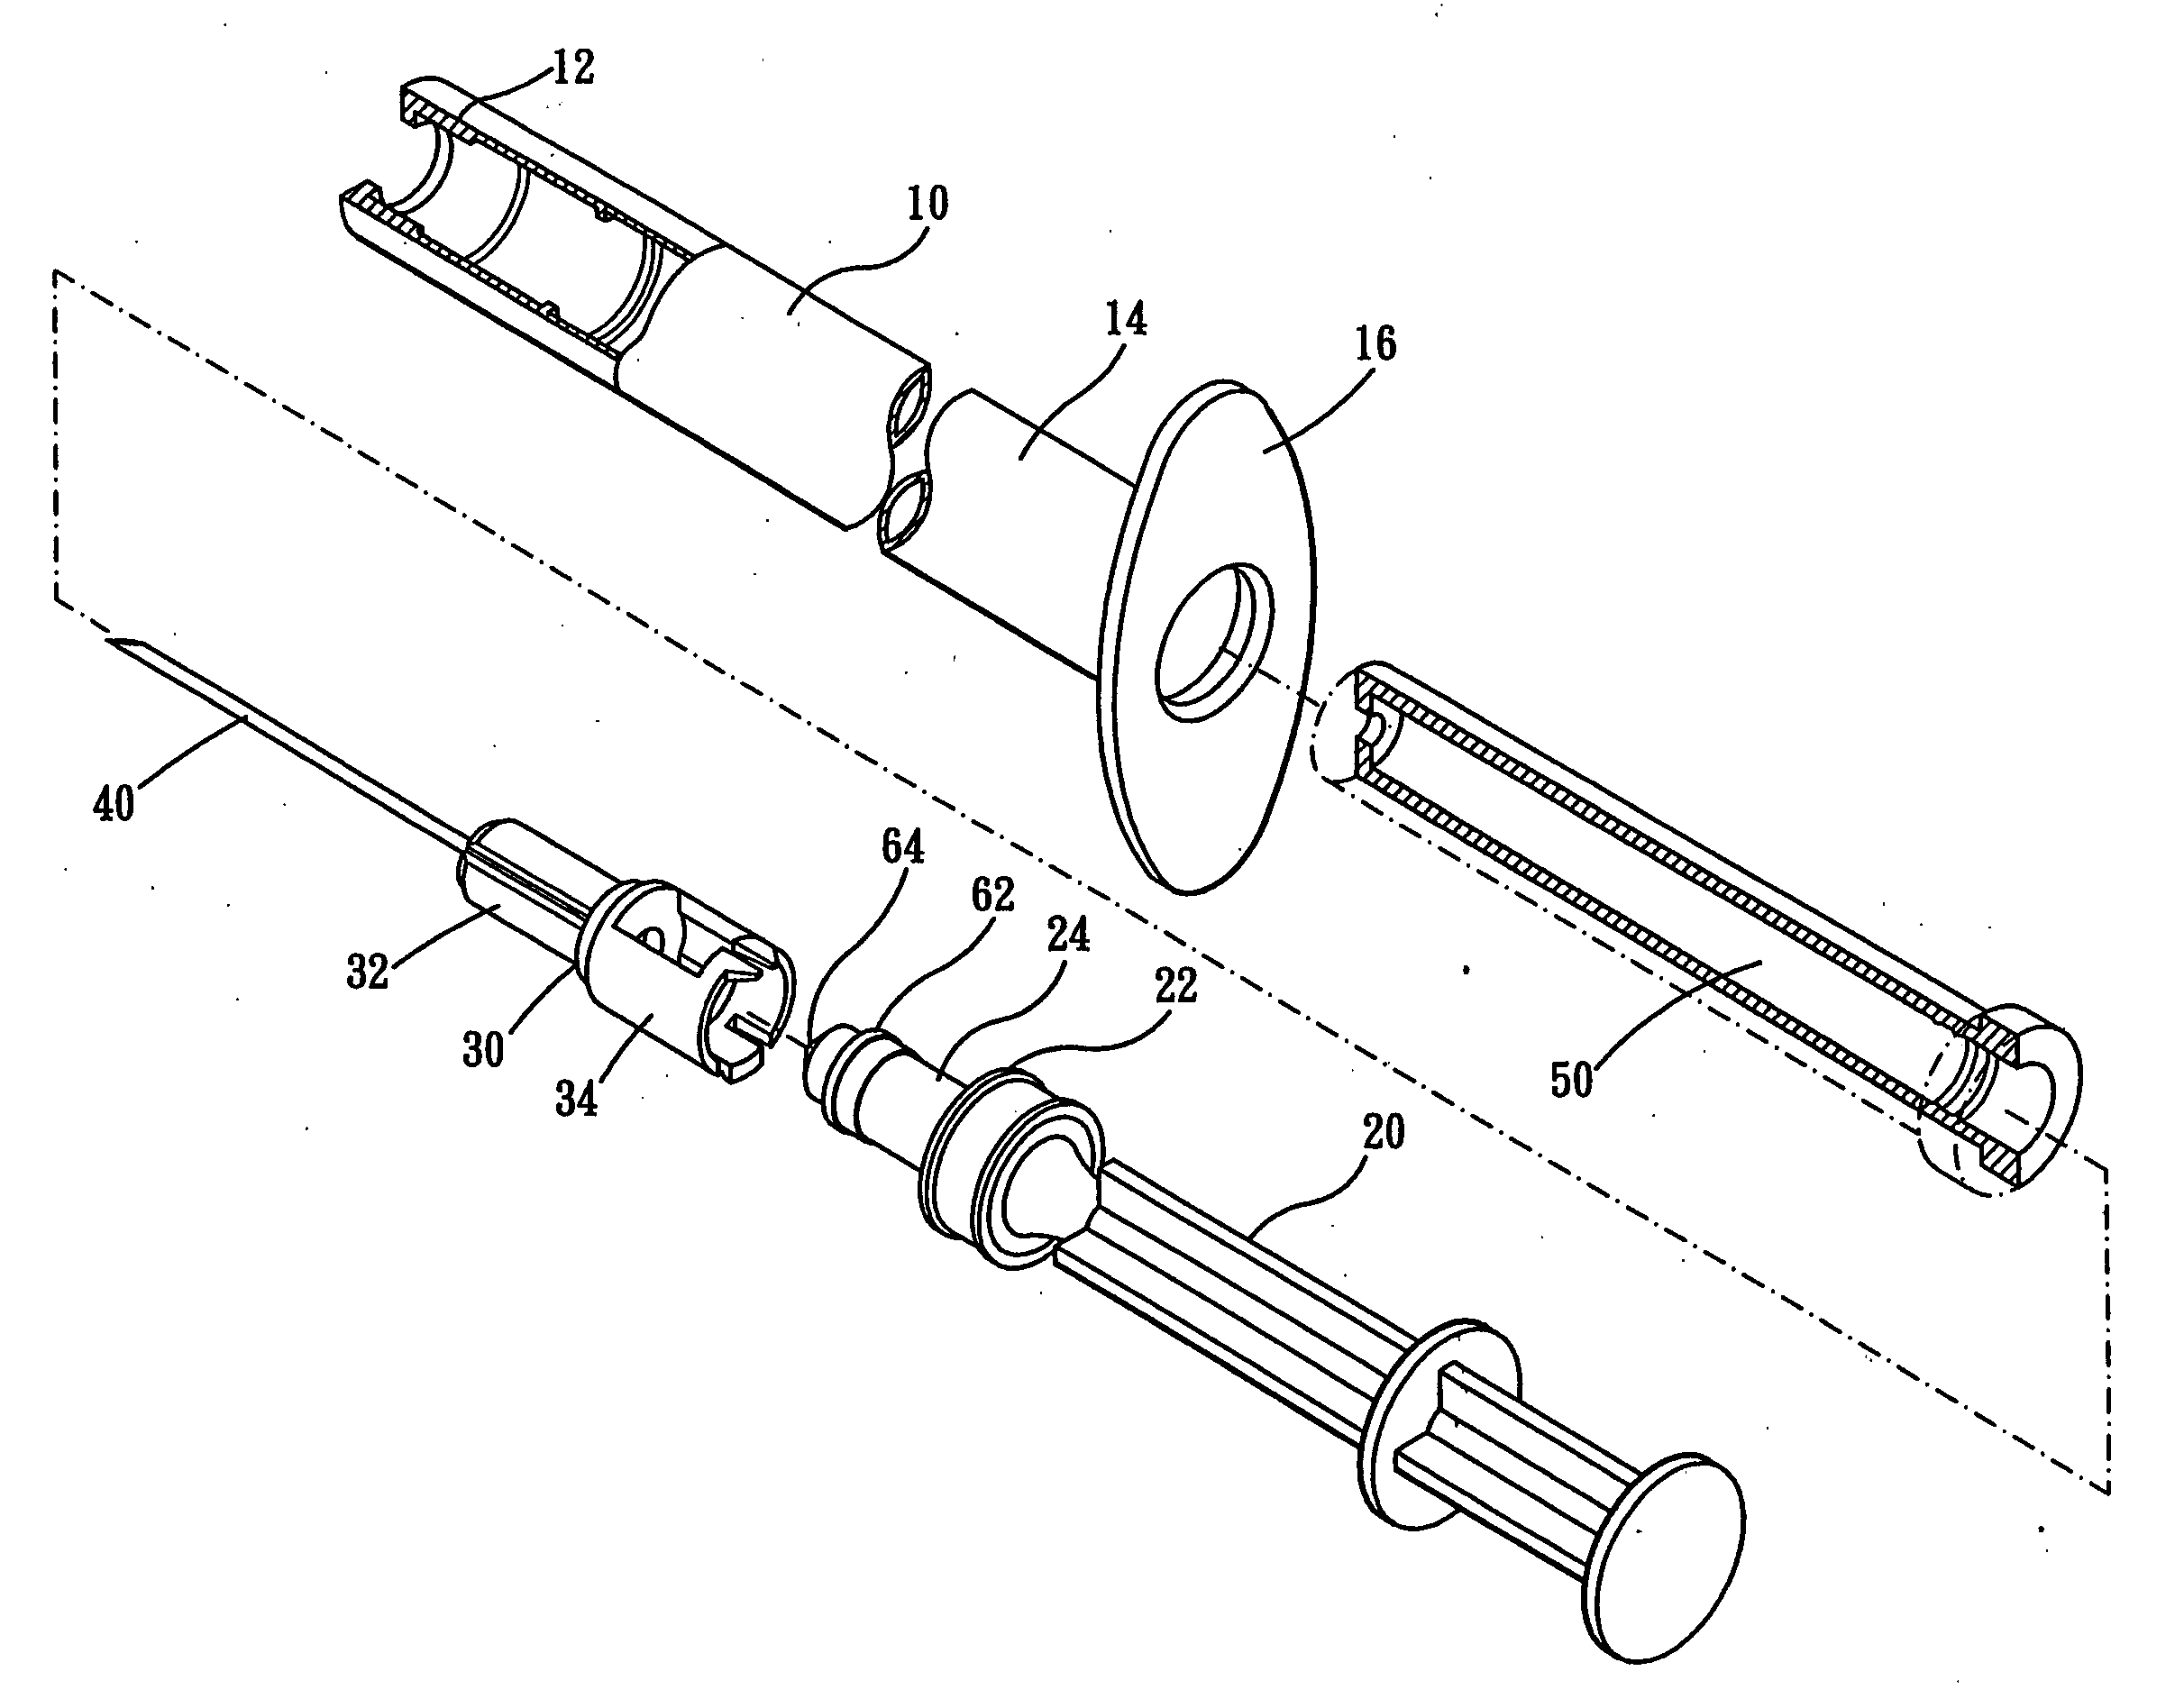 Mechanism for tilting retractable needle